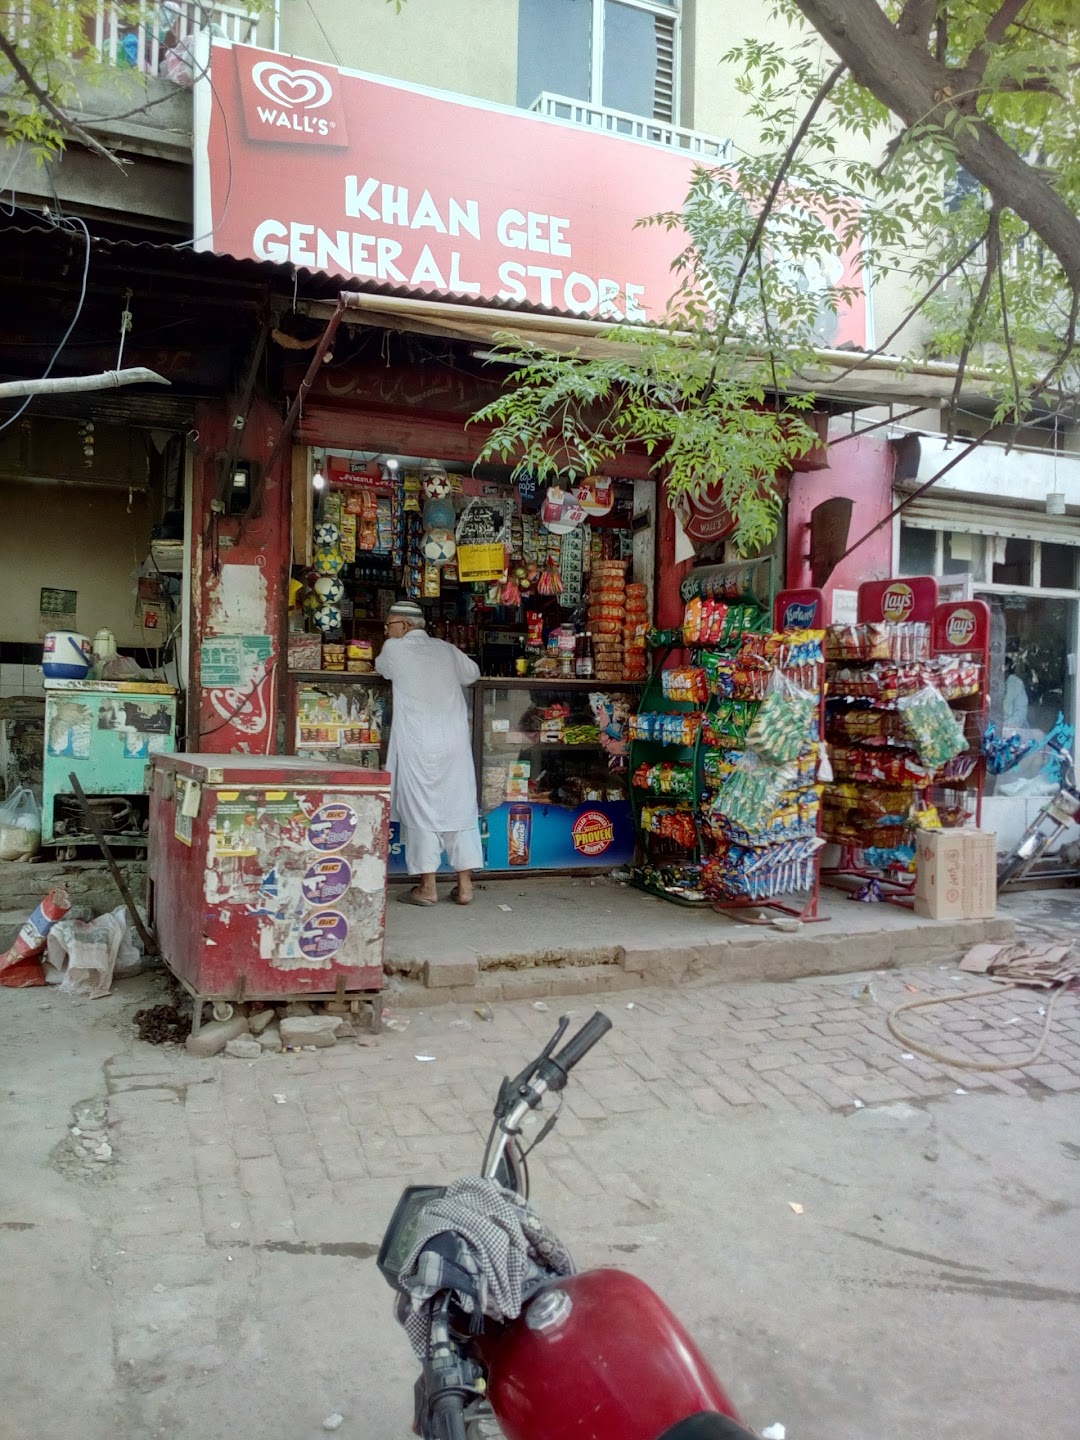 Khan Gee General Store